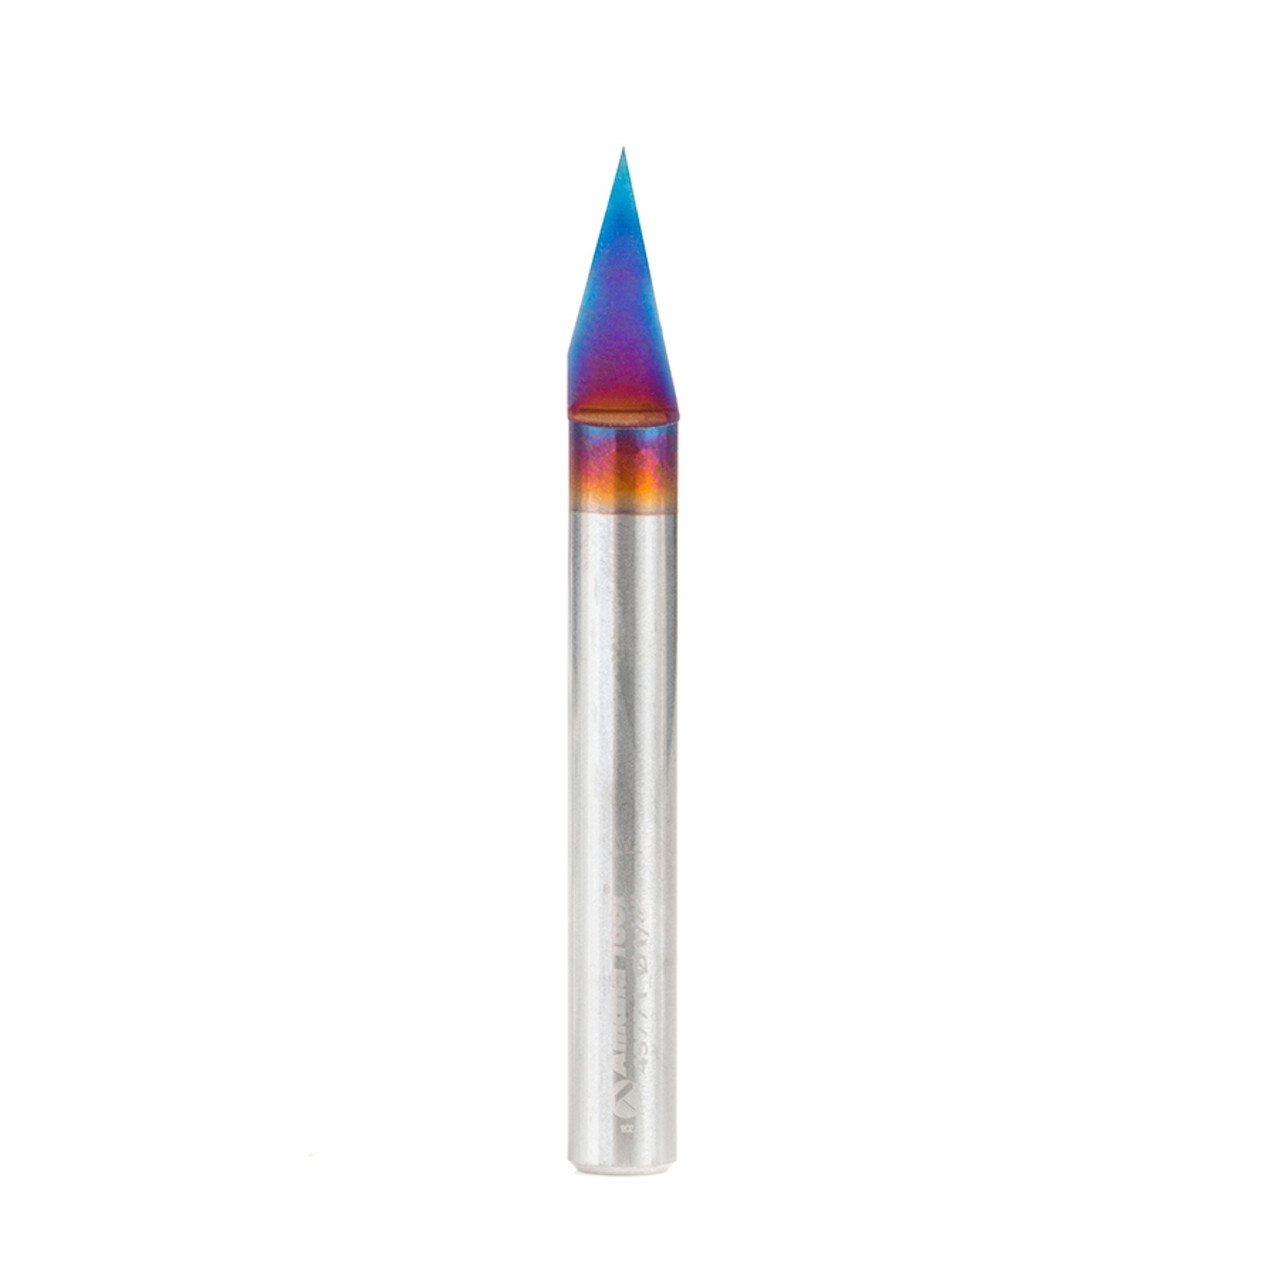 KTR-013 Acrylic Roller 5 cm - Star Burst - Kor Tools